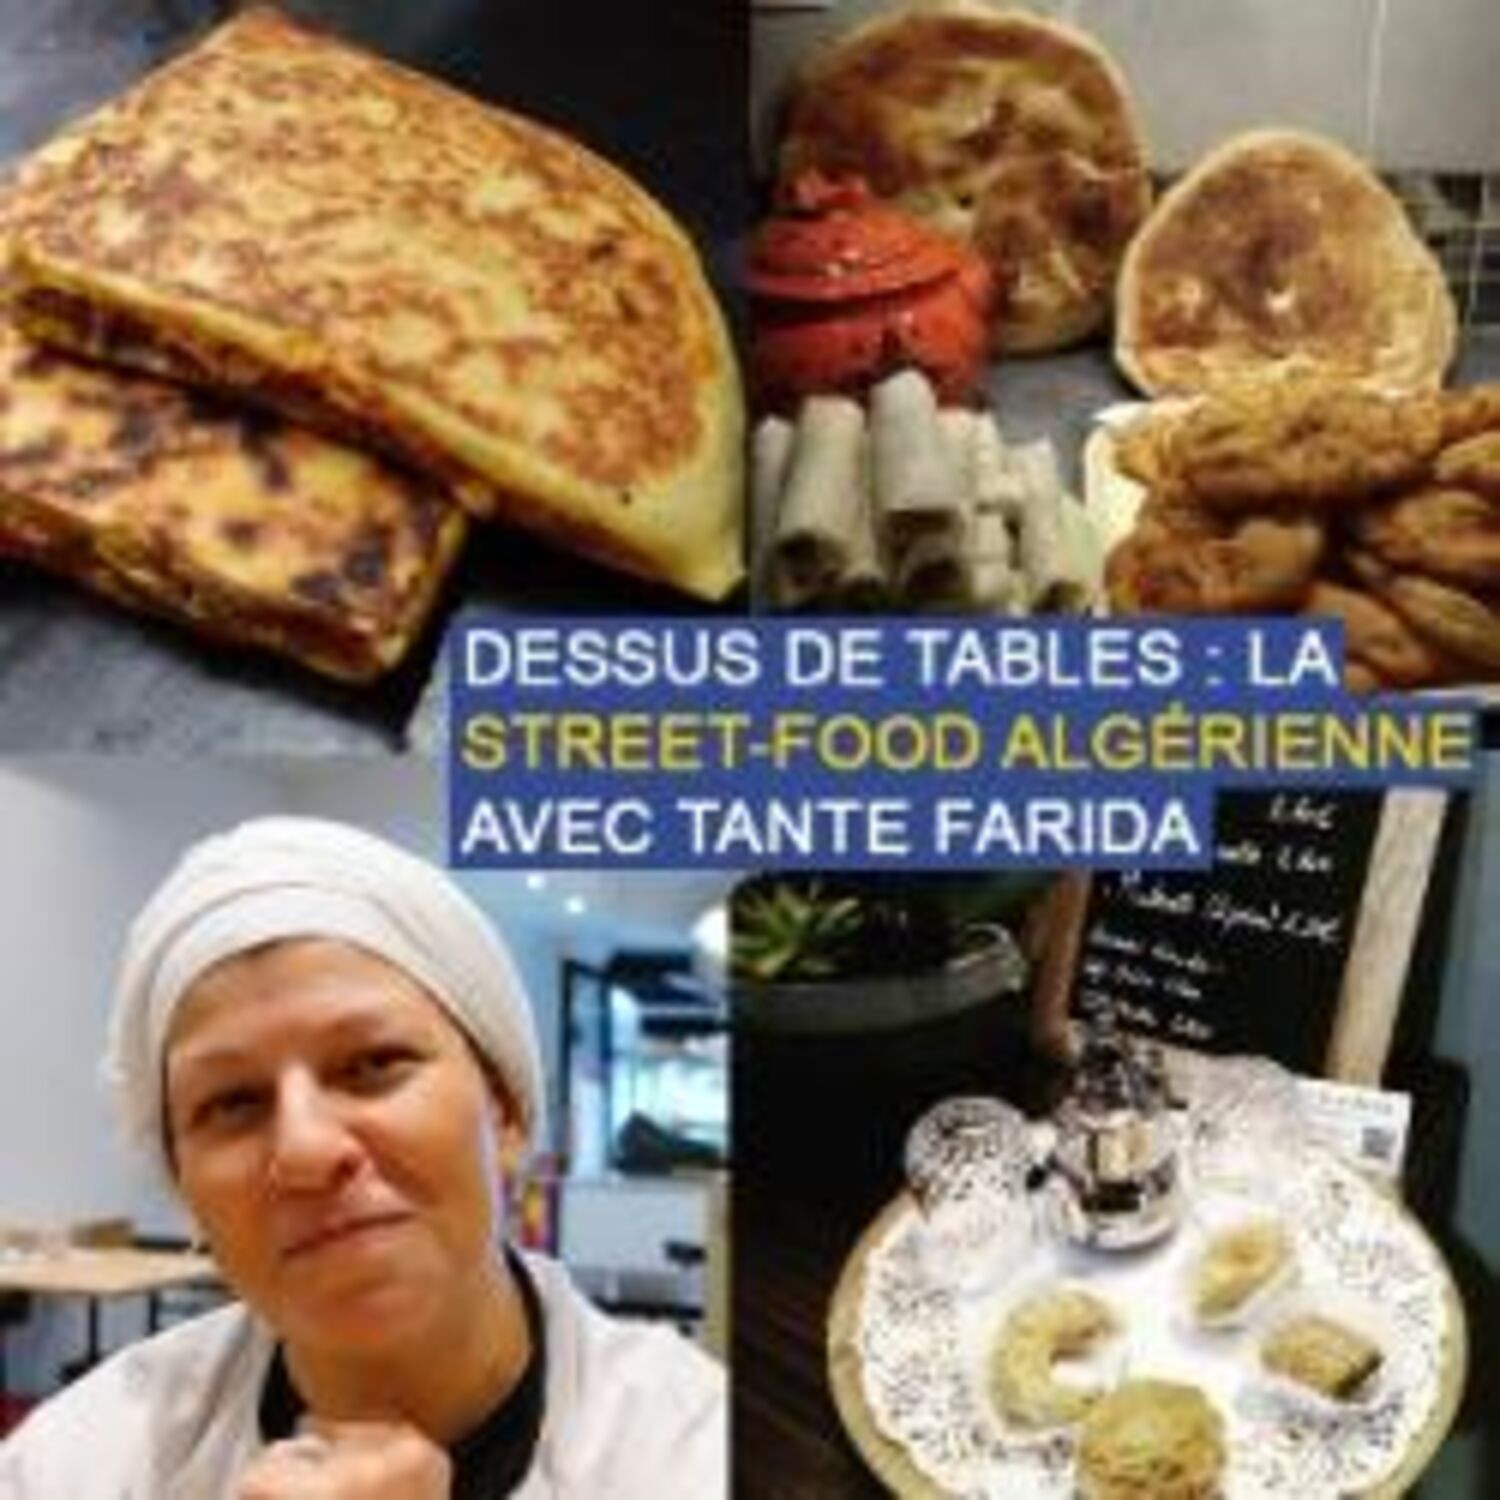 Dessus de tables du 03-10-2020 : La street-food algérienne, avec...